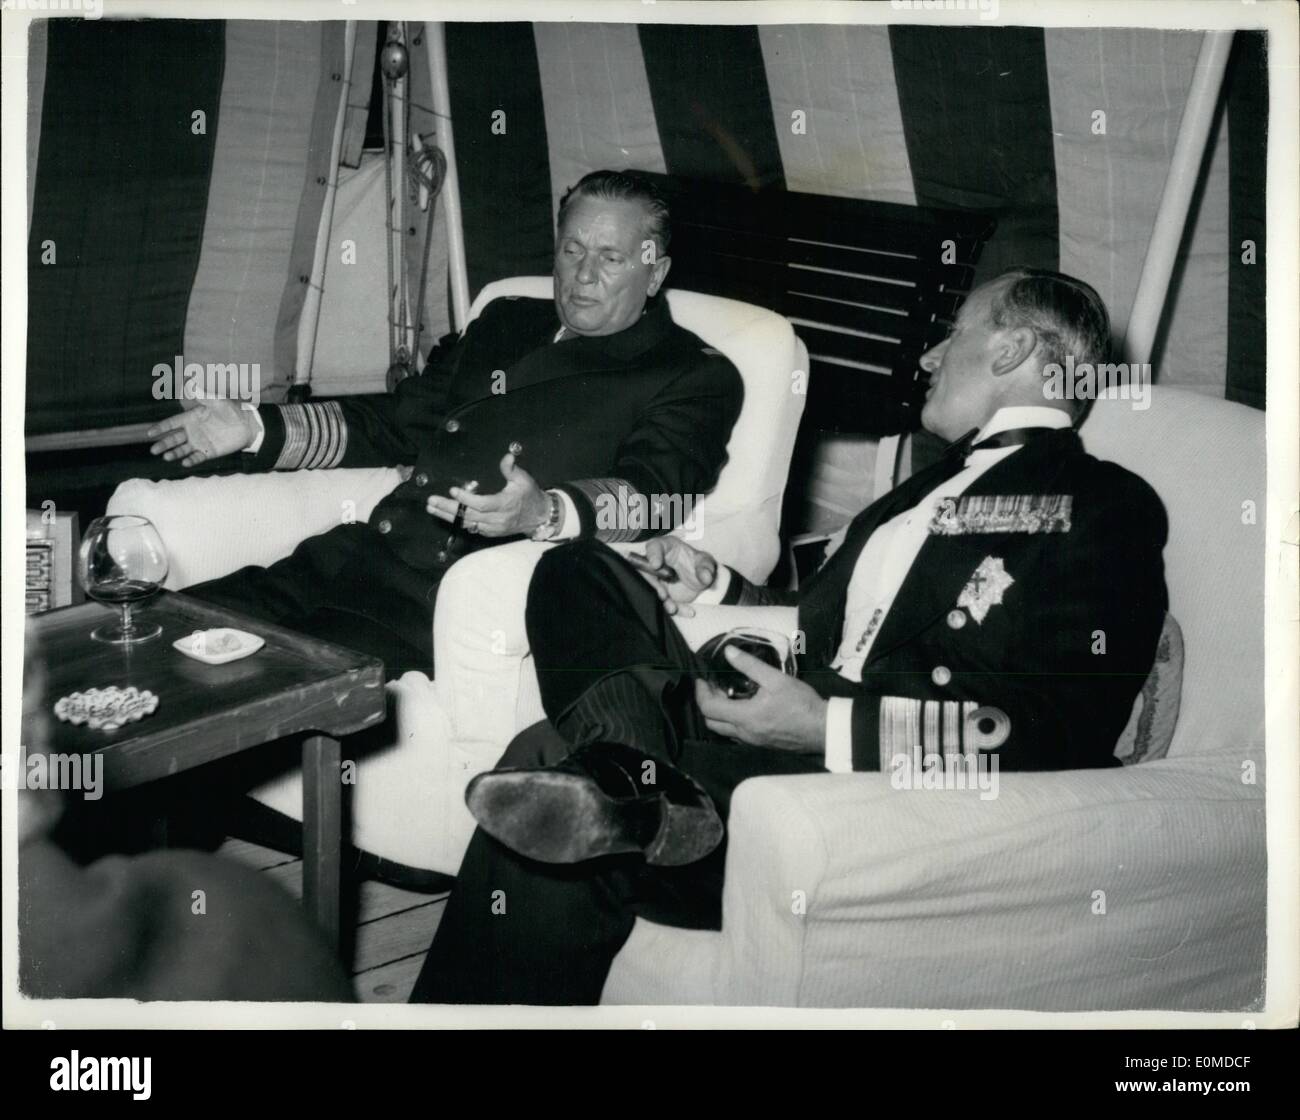 Octubre 10, 1954 - El Almirante Mountbatten dice adiós al presidente Tito: Almirante earl de Mounbatten Buran, K.G., K.C.B., G.C.V.O., G.M.S.I., D.S.S, volaba su bandera en el buque dispaton sorpresa, llegamos en la isla de Brioni, Yugaslavia, recientemente. Después de disparar un saludo personal al Presidente Tito en el lado norte de la isla, en vista de la casa del Presidente , H.M.S. sorpresa son horda del puerto en el lado sur de la isla. El almirante Mountbatten estaba pagando una llamada de despedida el presidente Tito antes relinguishing su mando del Mediterráneo Flest este año Foto de stock